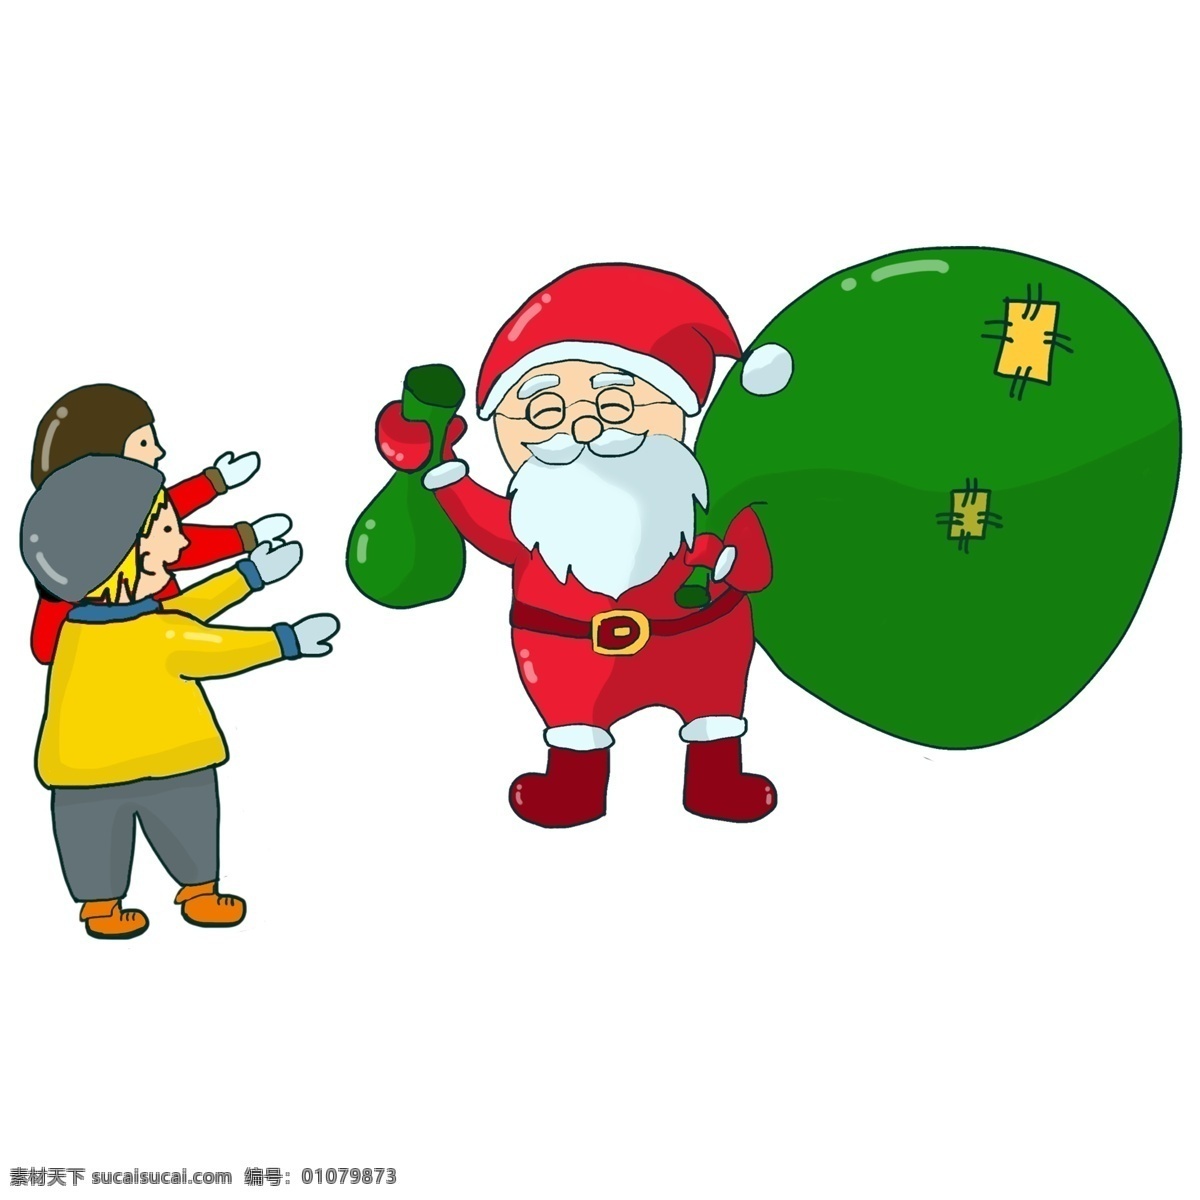 圣诞节 圣诞老人 发 礼物 手绘 分层 圣诞 发礼物 小孩 小朋友 分层psd 卡通